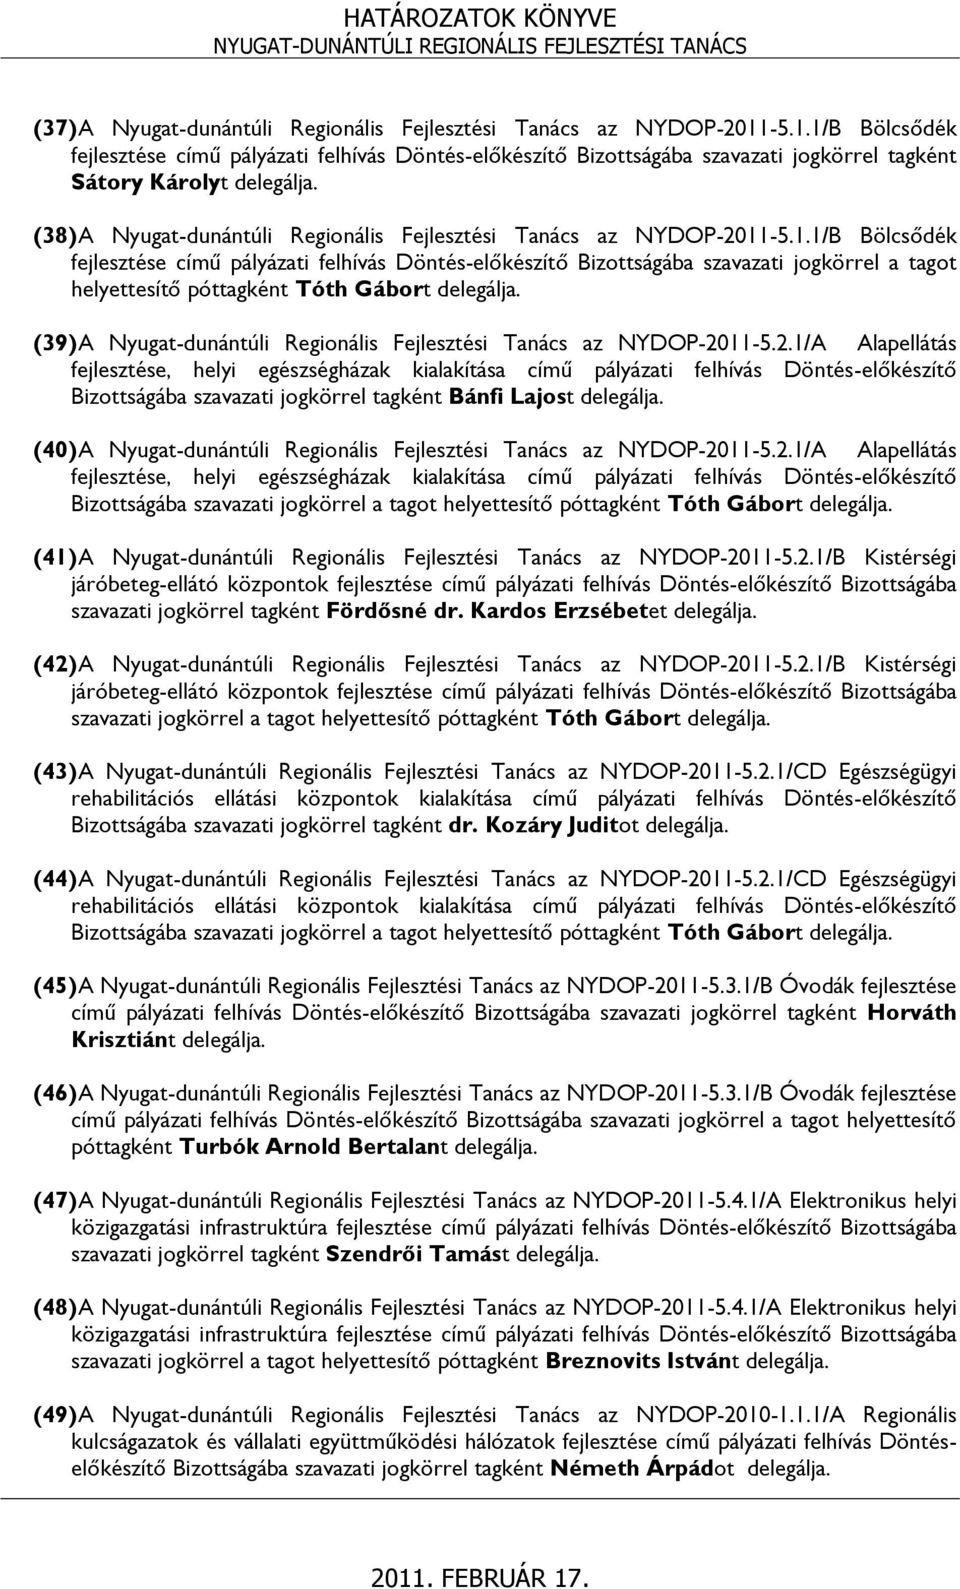 (38) A Nyugat-dunántúli Regionális Fejlesztési Tanács az NYDOP-2011